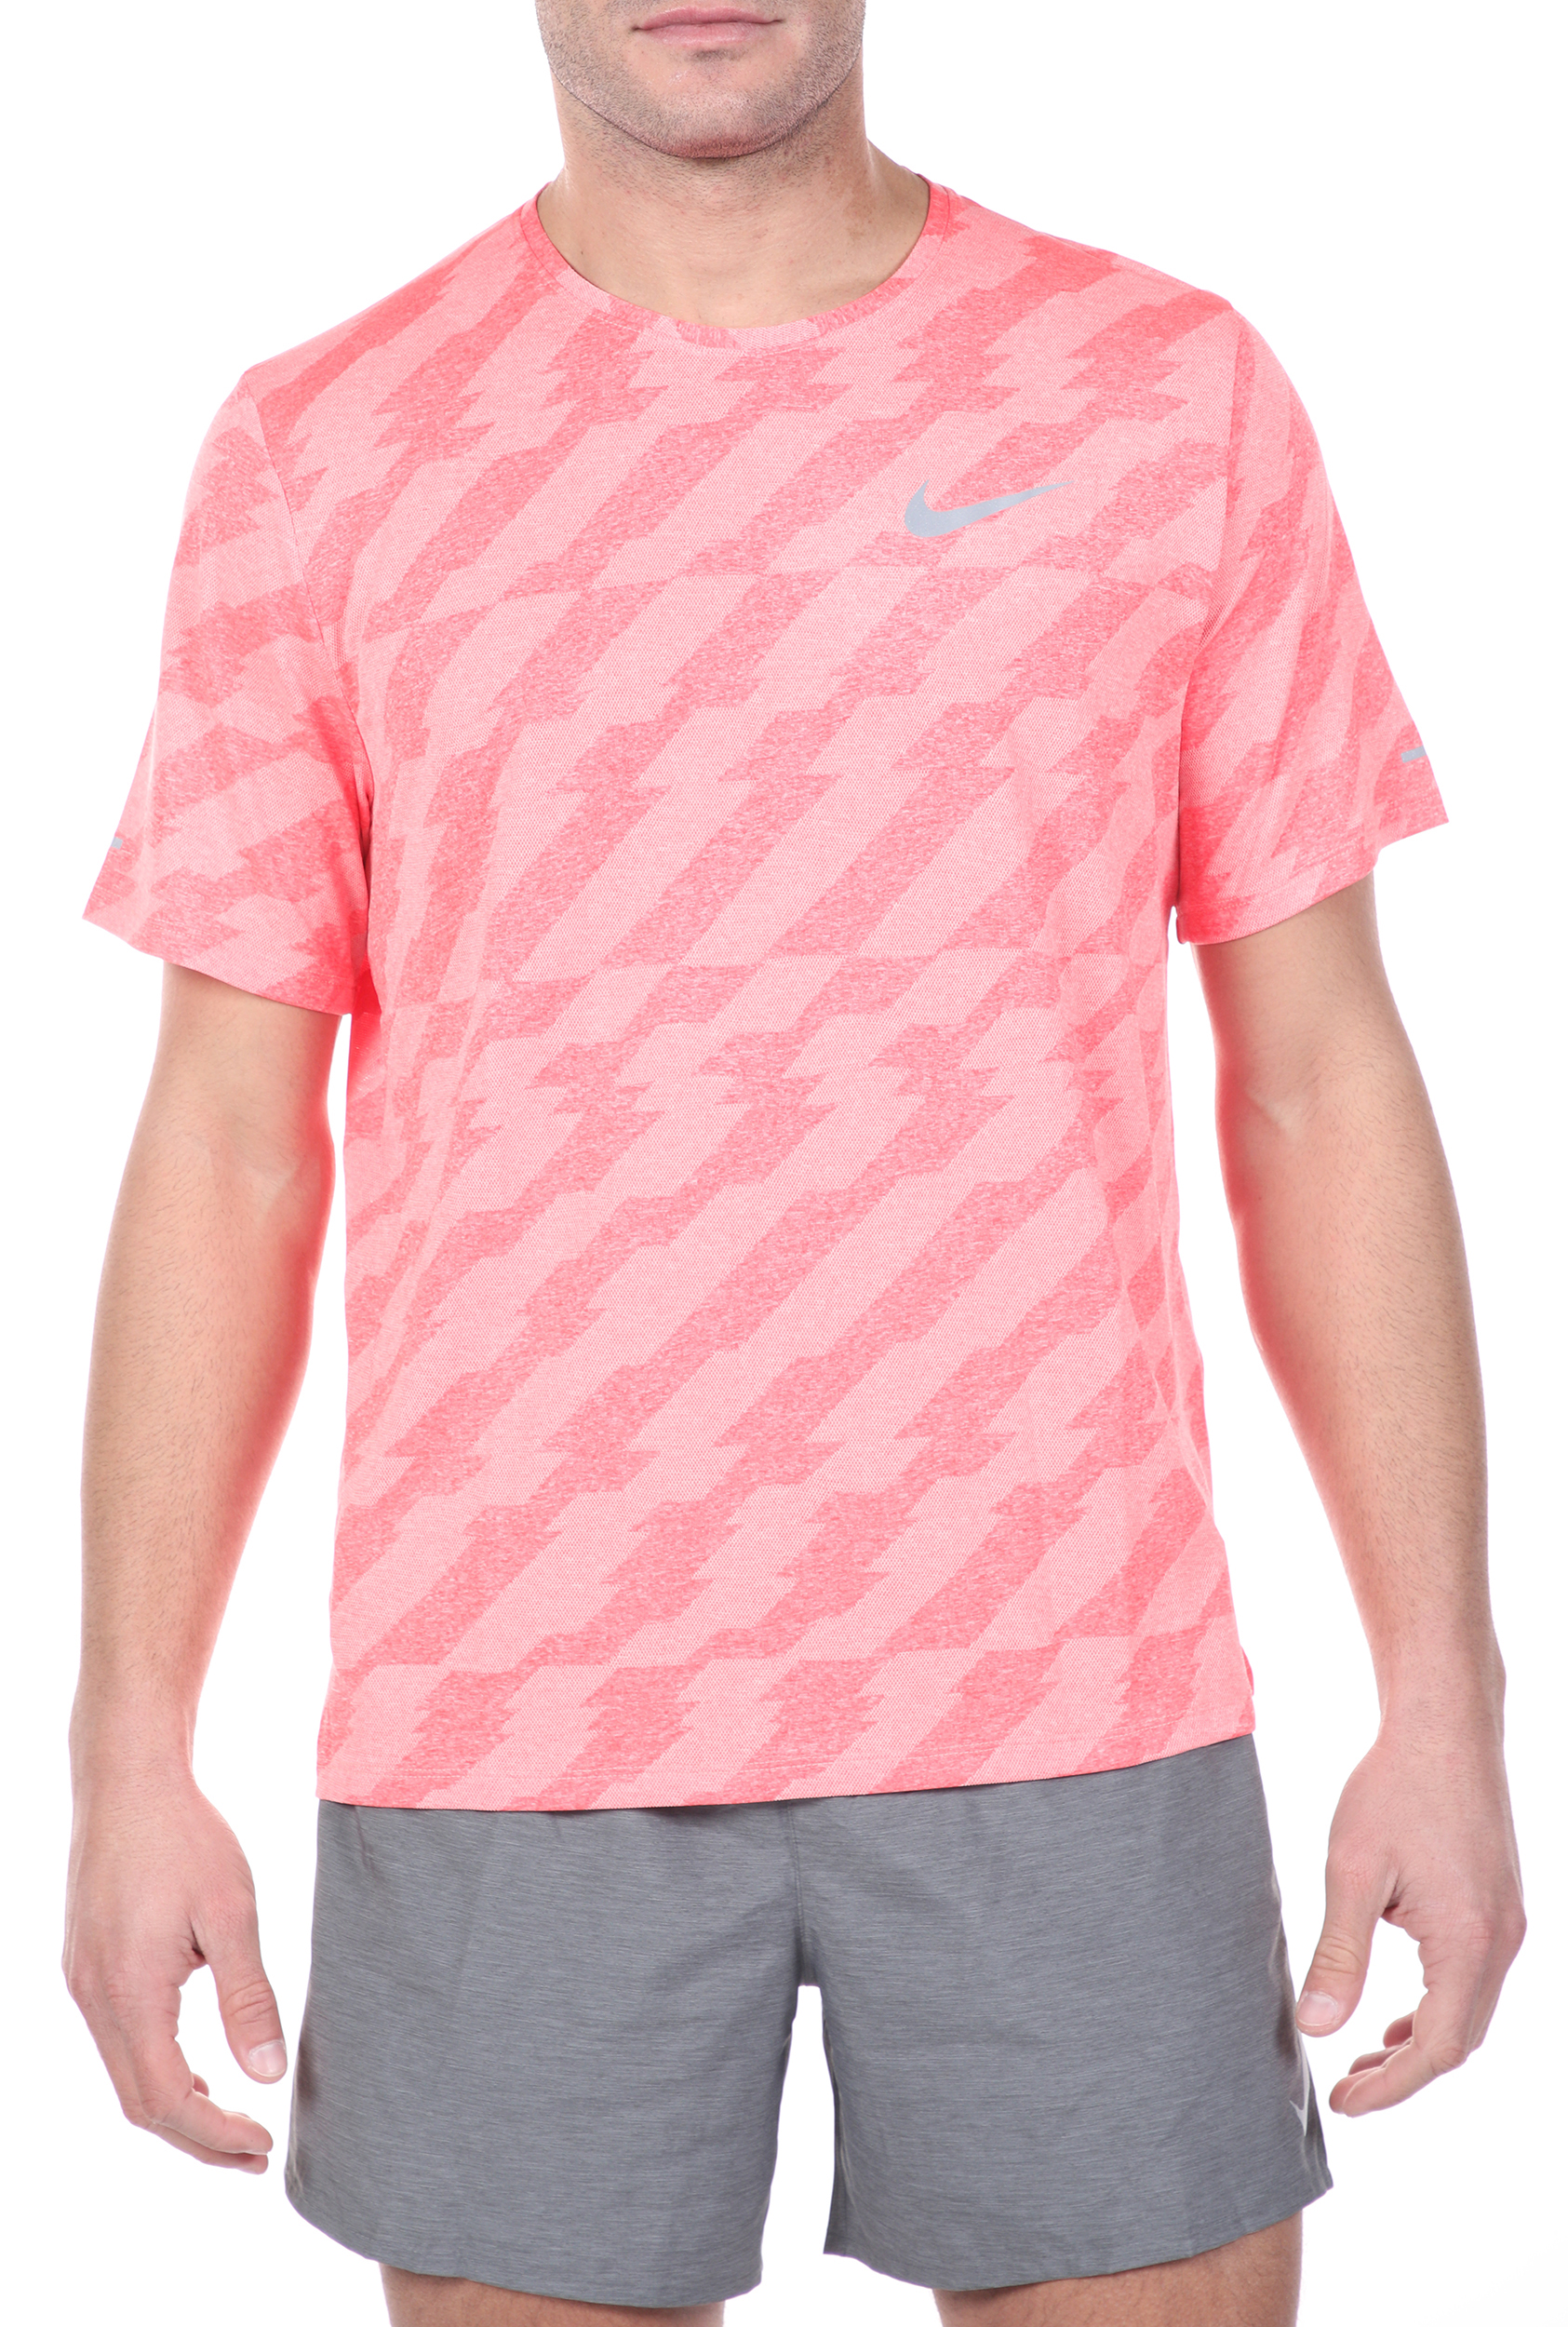 Ανδρικά/Ρούχα/Αθλητικά/T-shirt NIKE - Ανδρική μπλούζα NIKE DF MILER SS FF JAC ροζ